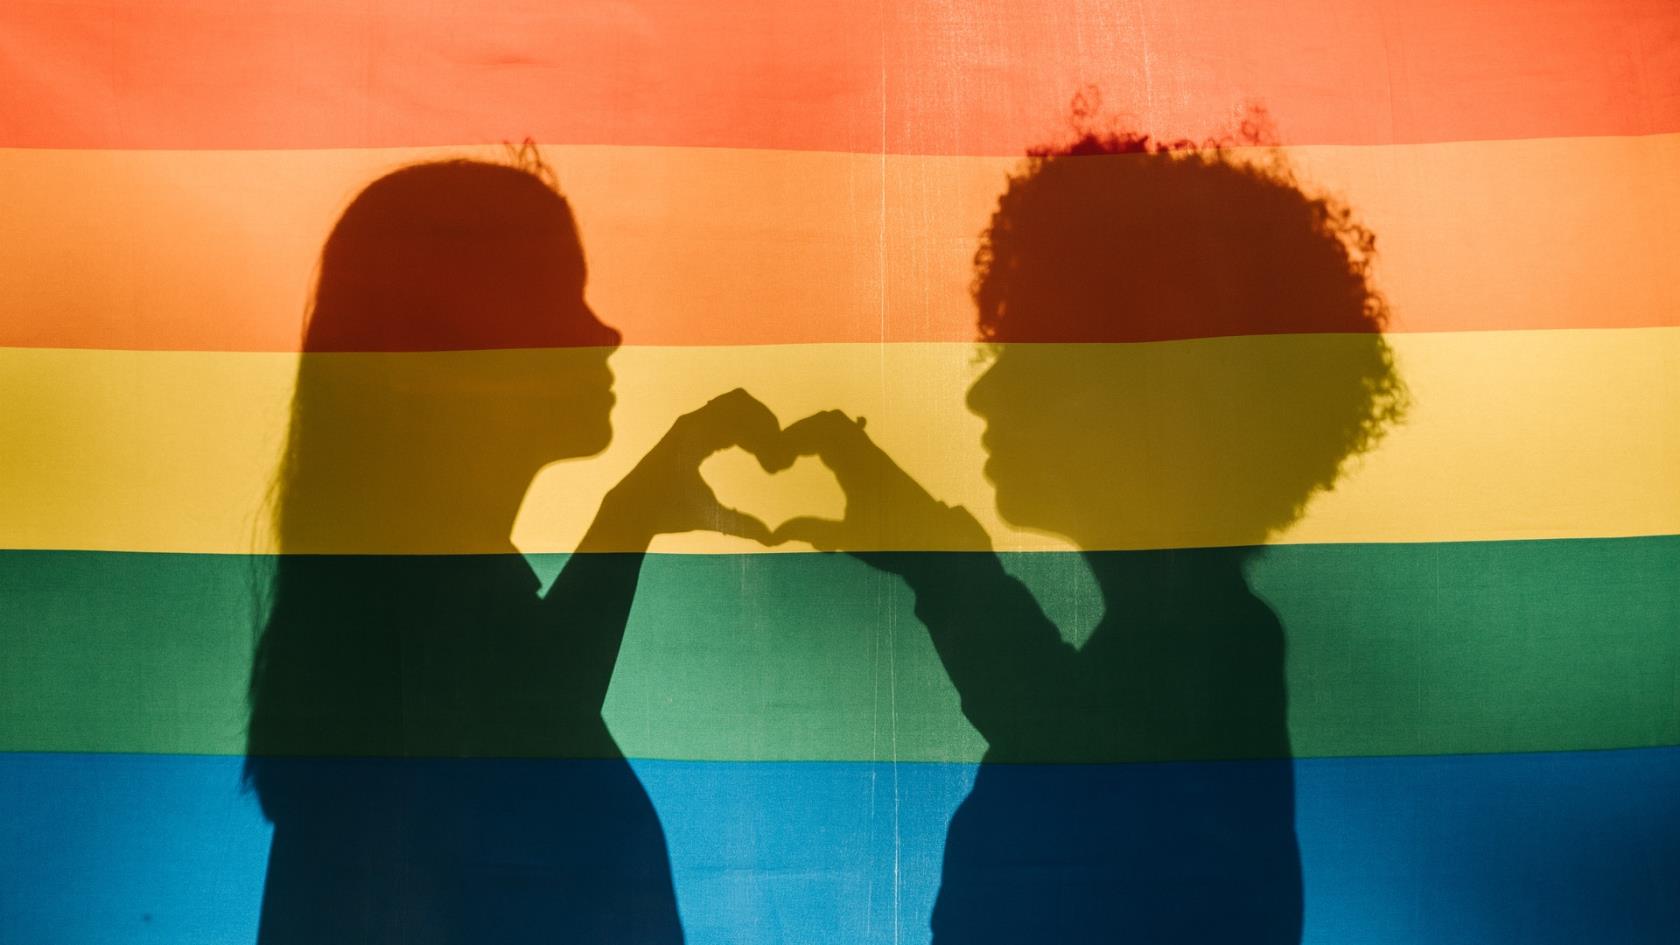 Bakom en halvt genomskinlig regnbågsflagga syns silhuetten av ett par som gör hjärt-tecken med sina händer.